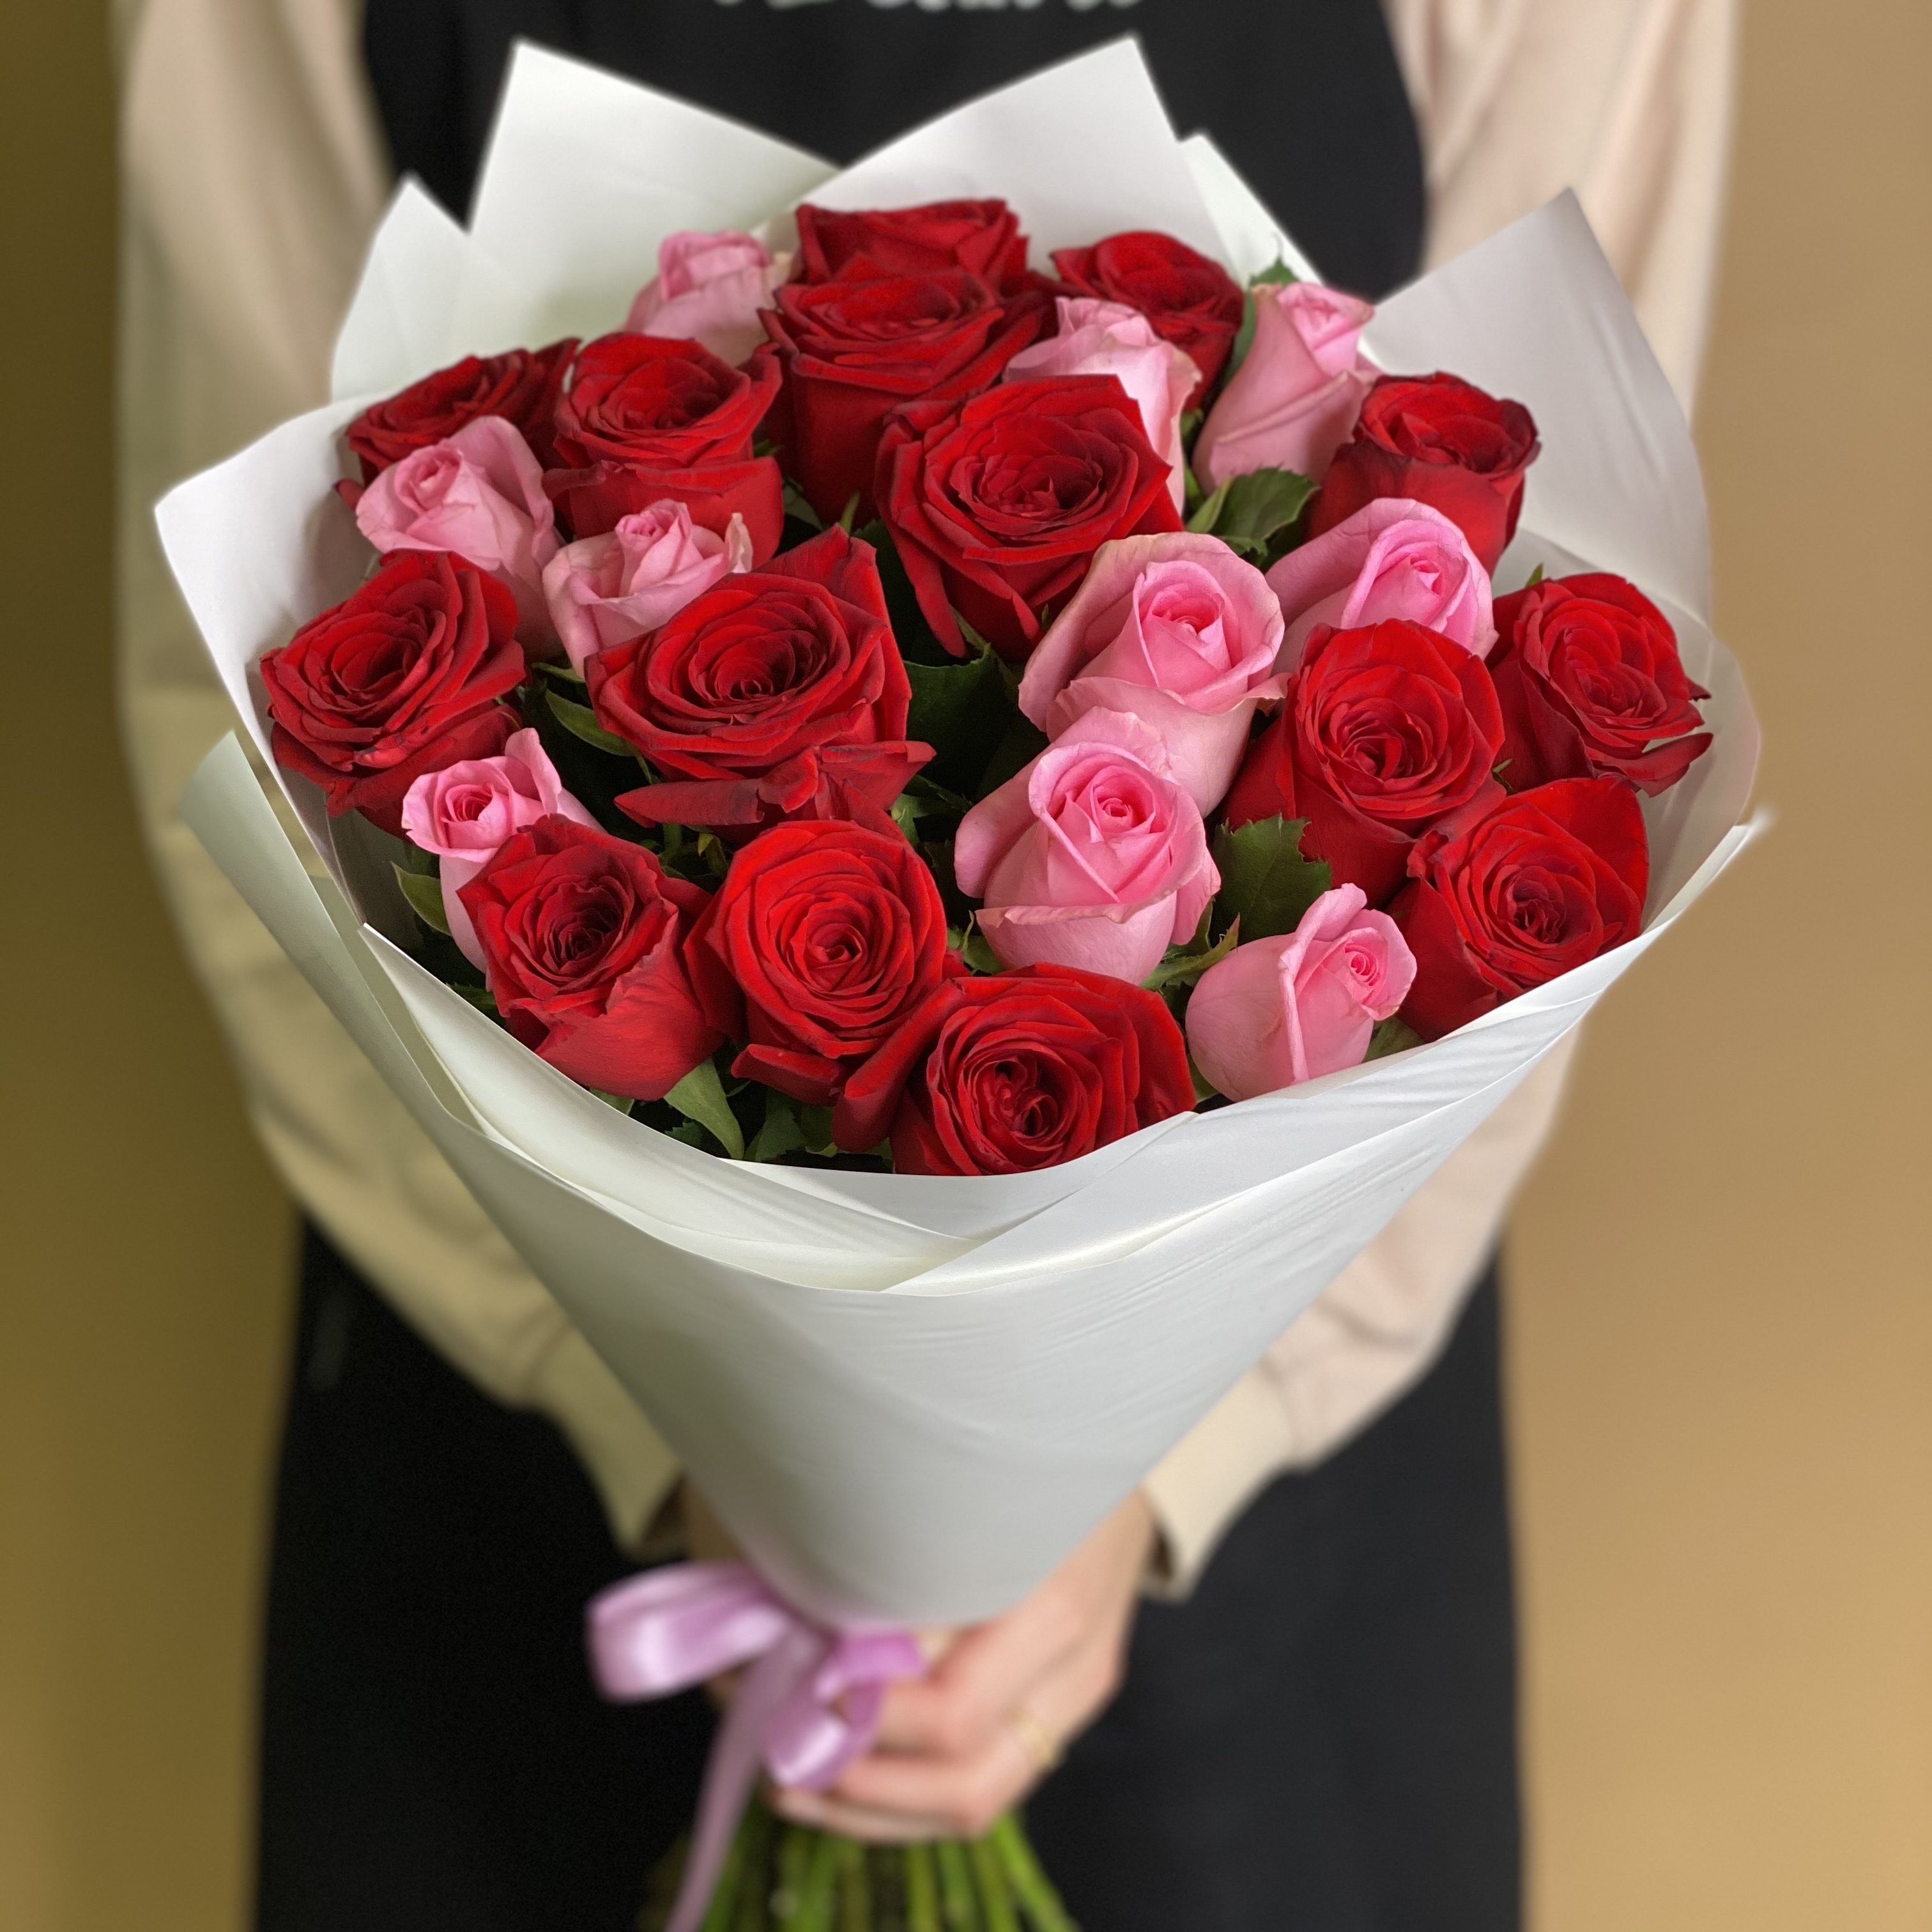 букет из красных и розовых роз 25 шт 60 см Букет из красных и розовых роз 25 шт. (60 см)